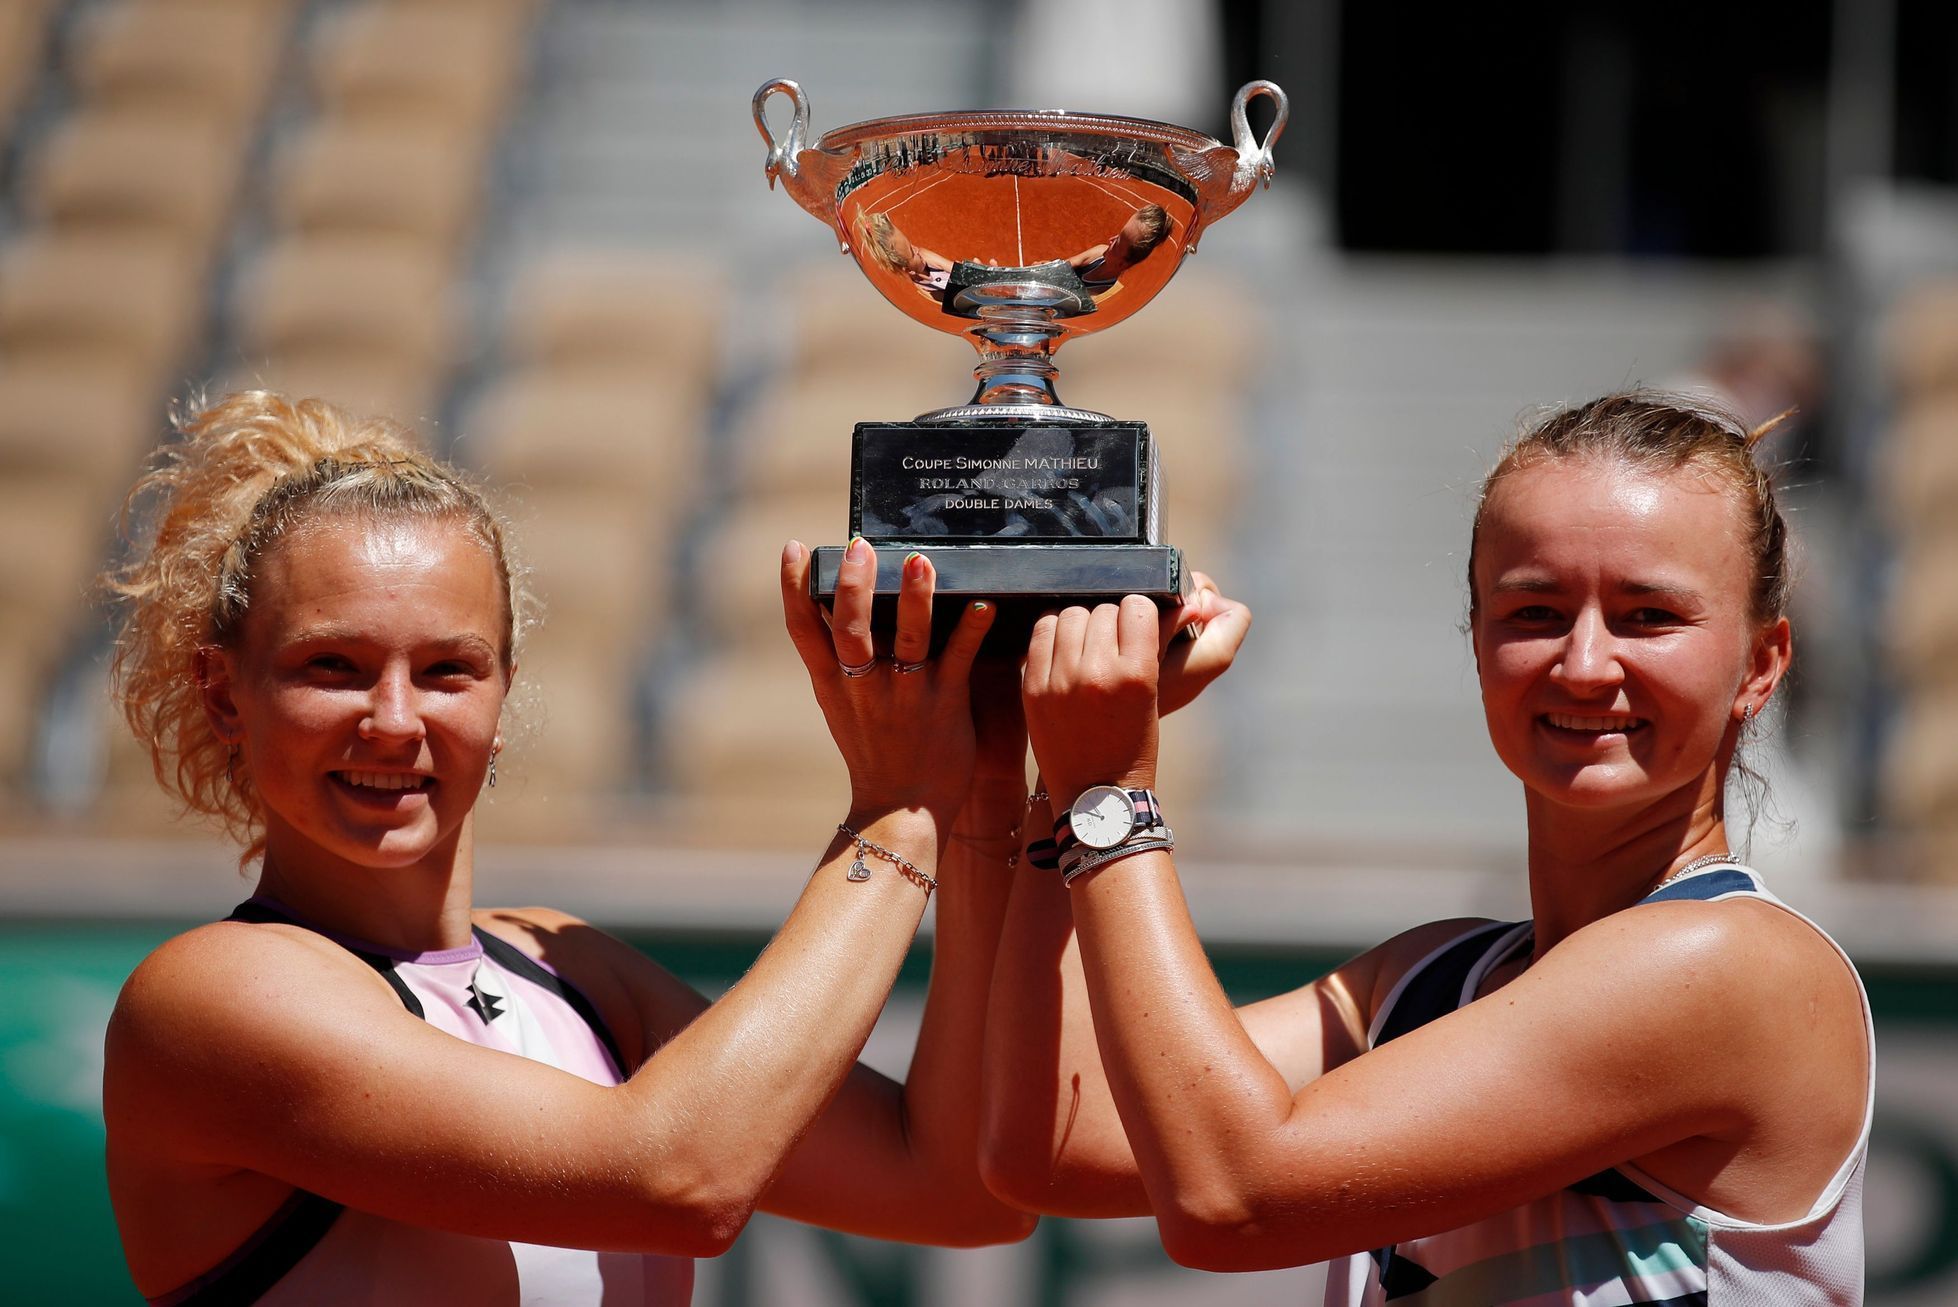 Kateřina Siniaková a Barbora Krejčíková s trofejí pro vítězky čtyřhry na French Open 2021